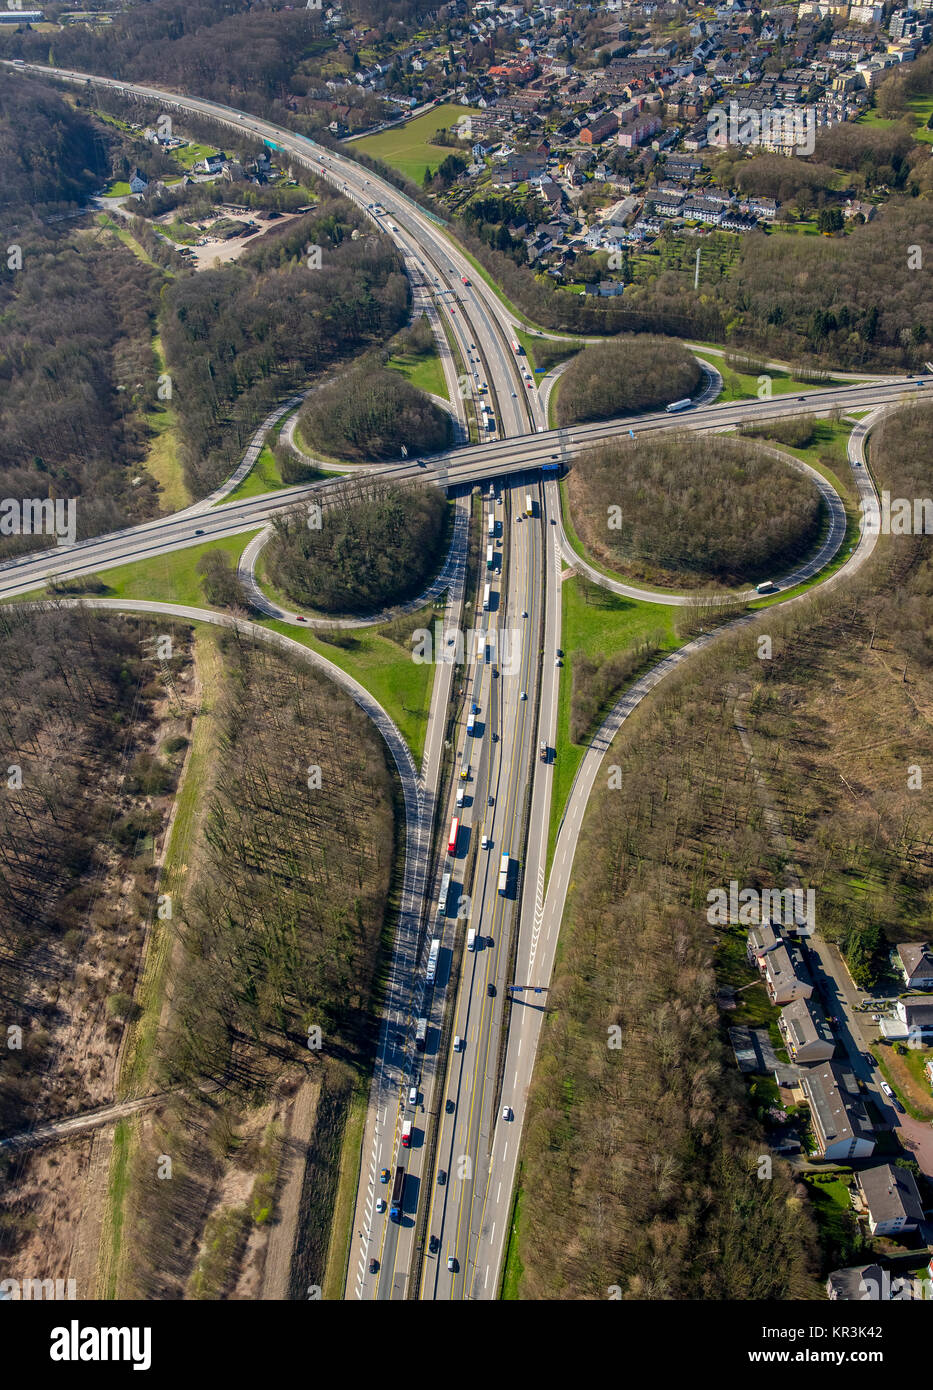 Hagen Kreuzung, Autobahn A45 und A46, Hagen, Ruhrgebiet, Nordrhein-Westfalen, Deutschland, Hagen, Ruhrgebiet, Nordrhein-Westfalen, Deutschland Stockfoto